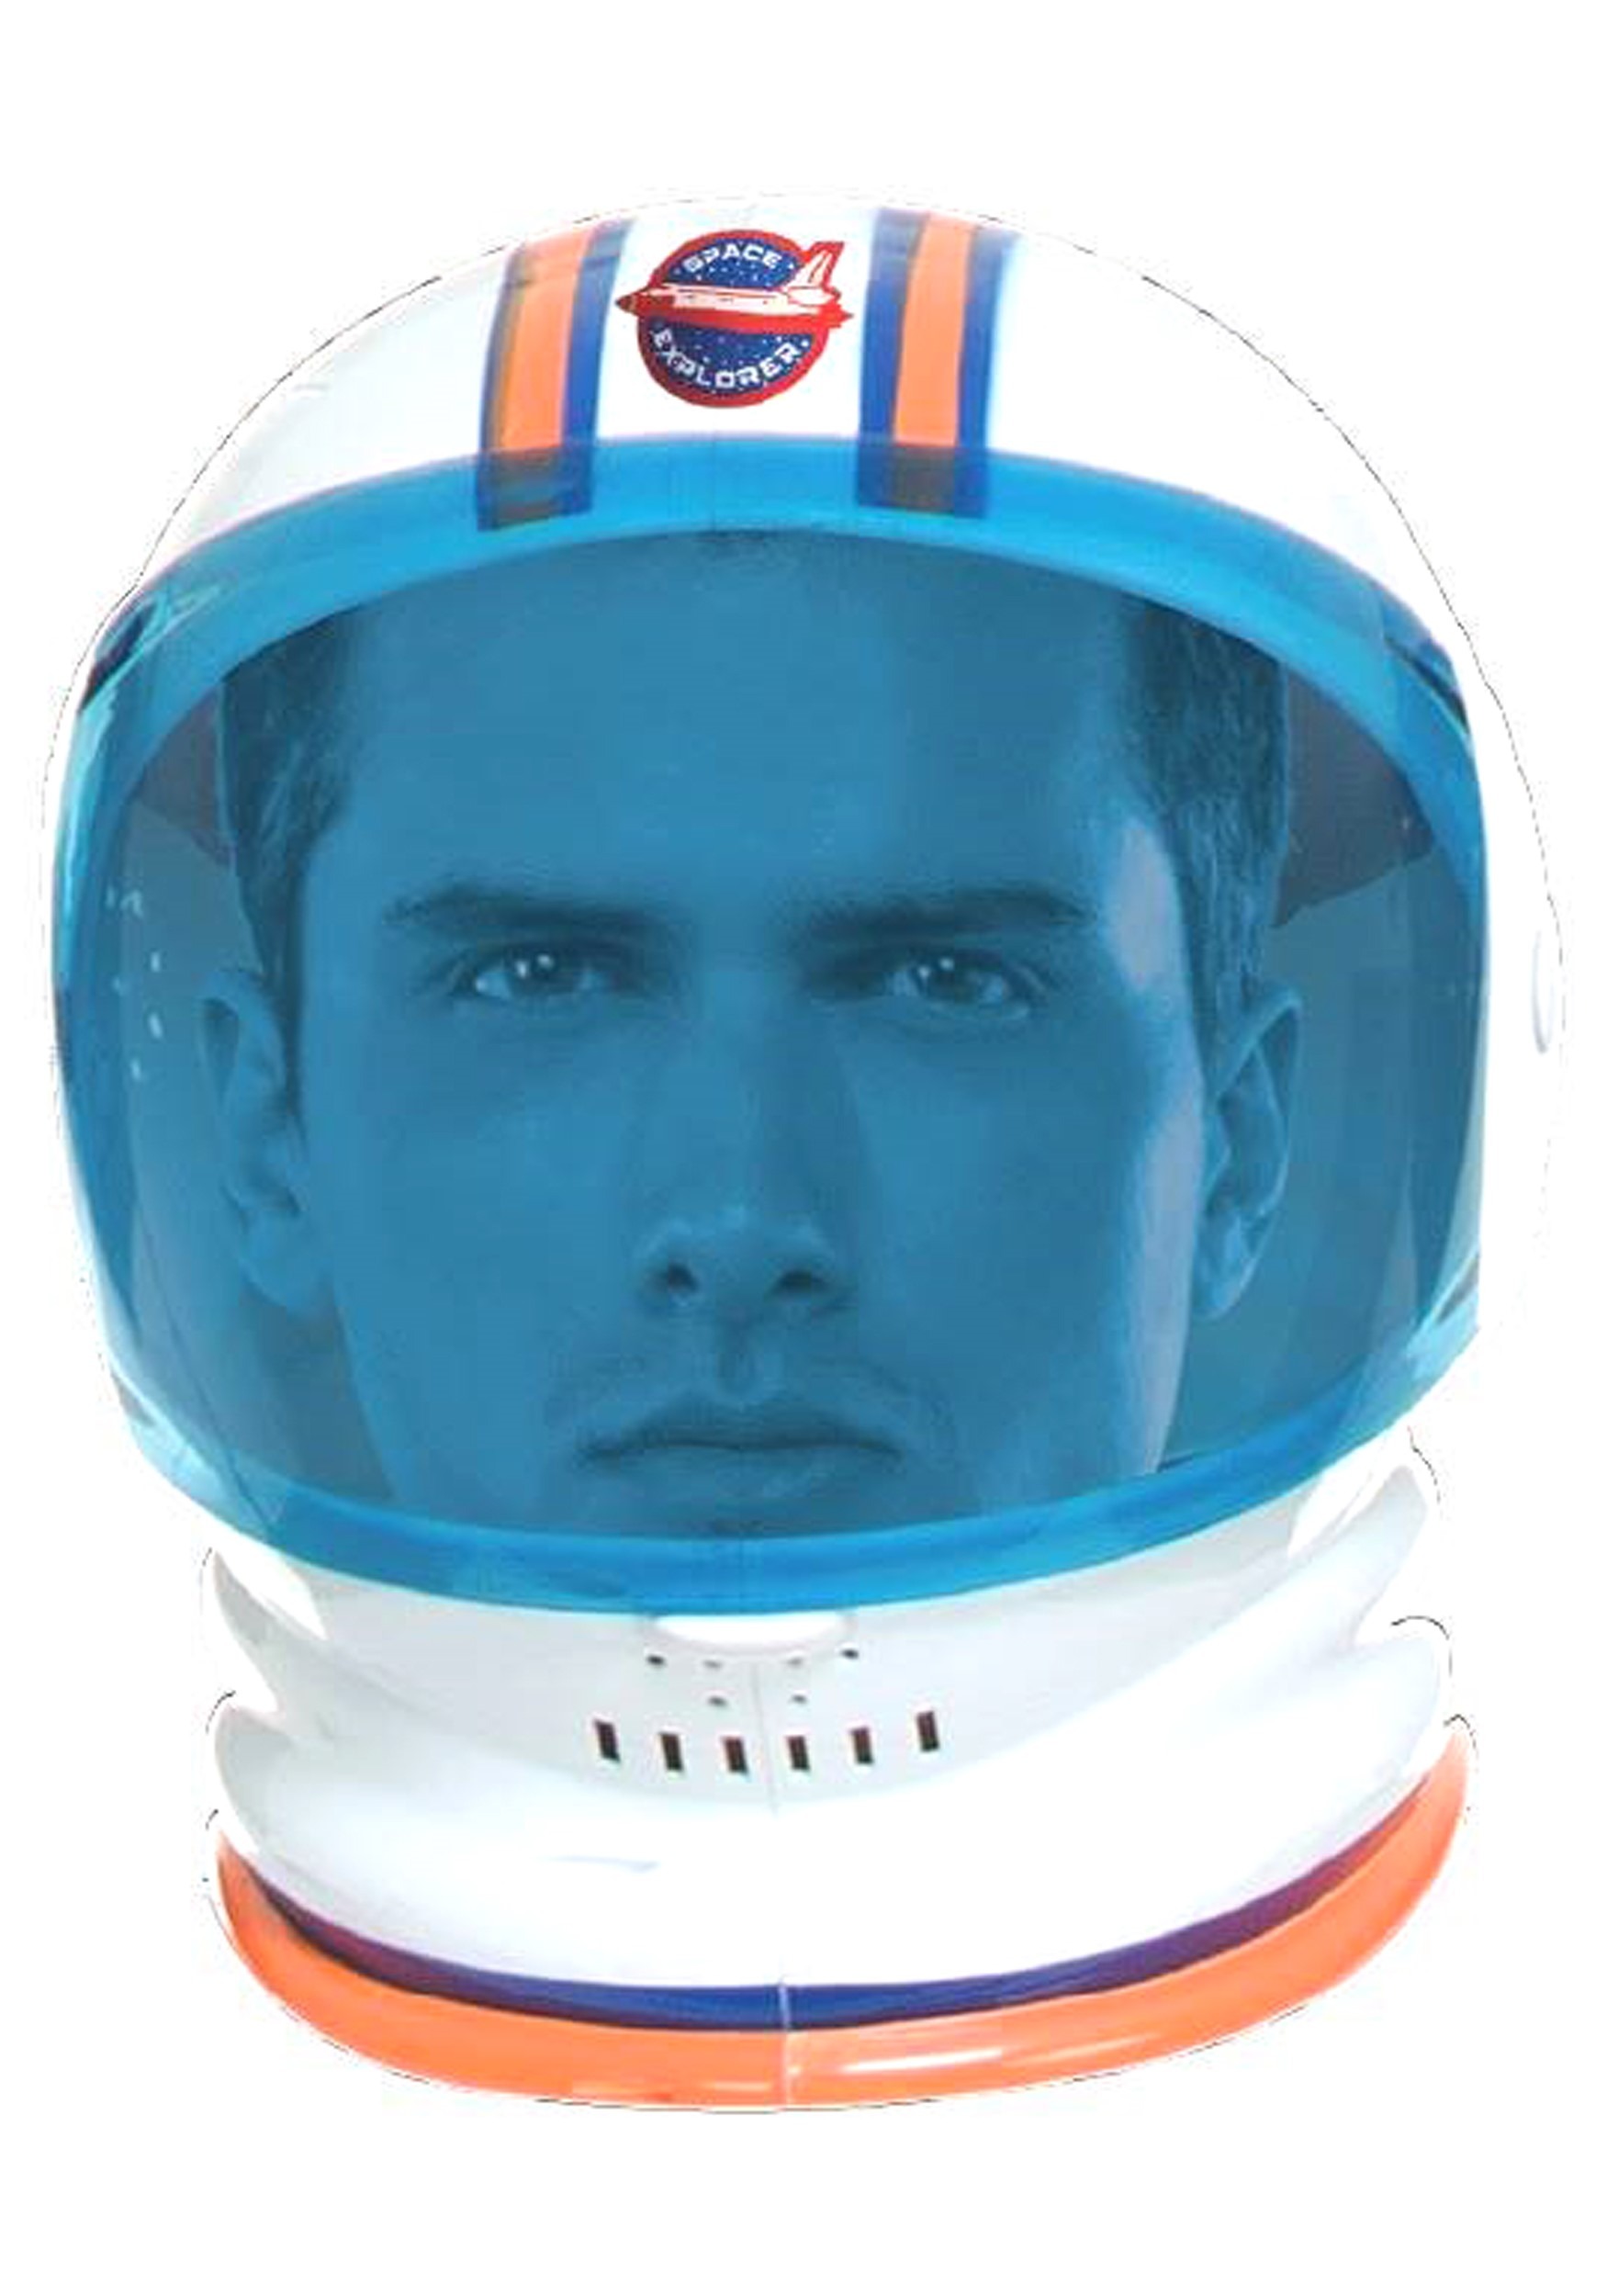 Casco de disfraces de astronauta para adultos Multicolor